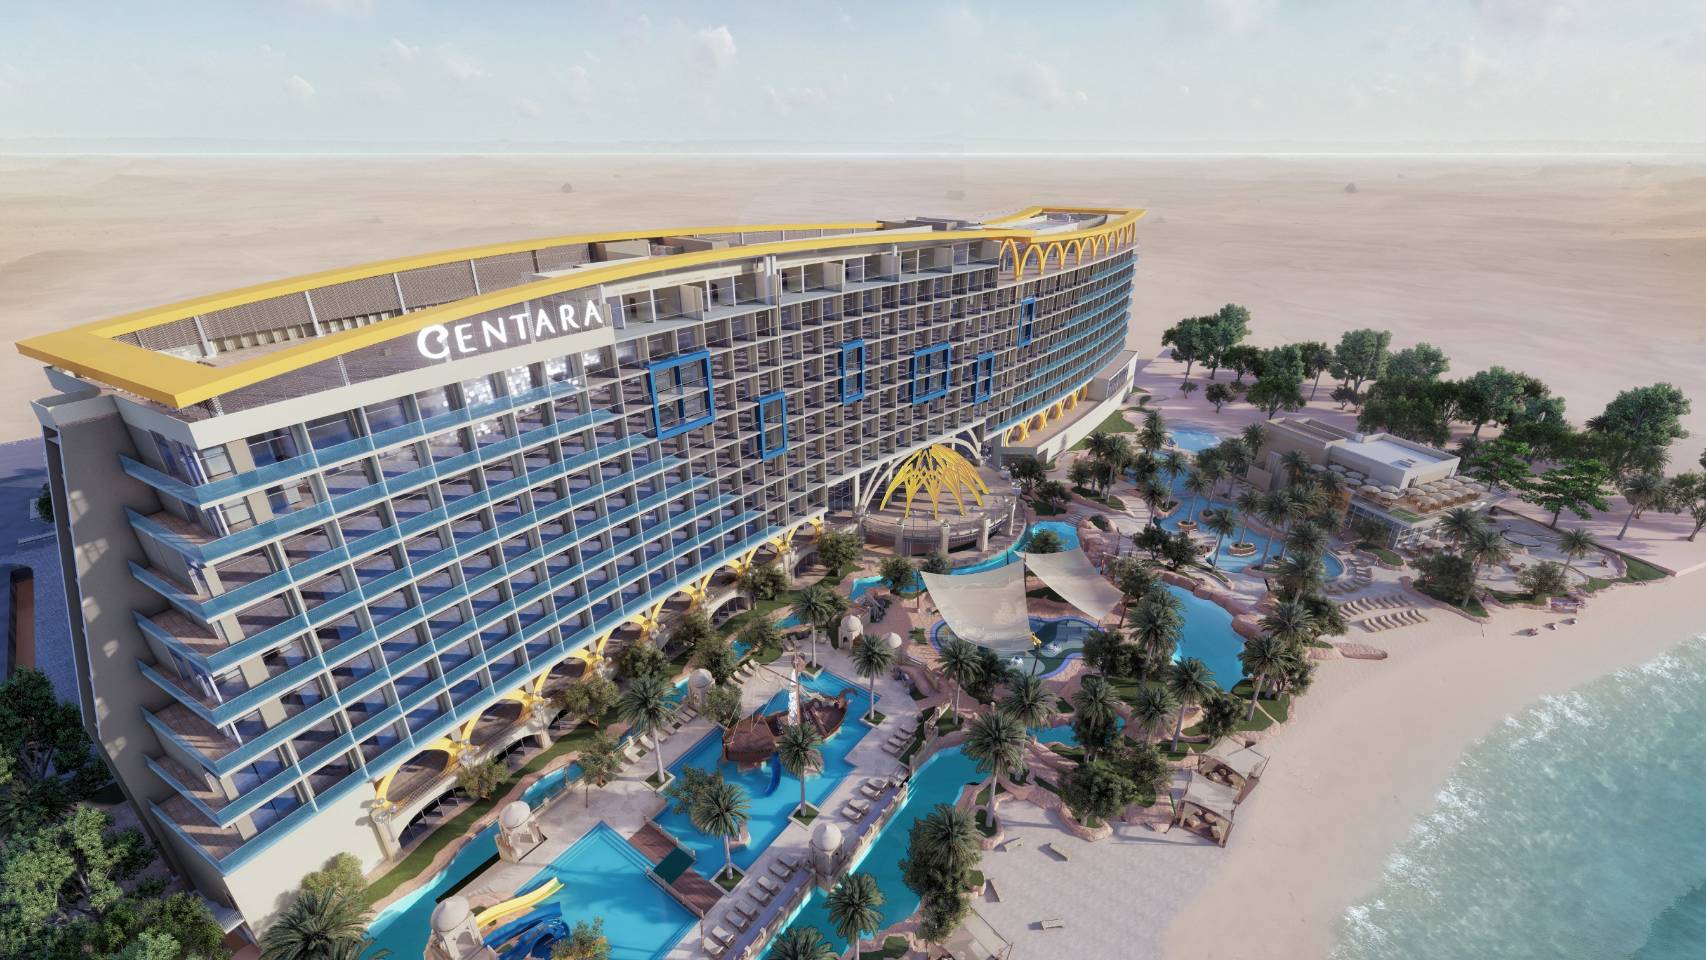 เซ็นทารา ปักธง “เซ็นทารา มิราจ บีช รีสอร์ท ดูไบ” โรงแรมแห่งแรกใน UAE ตุลาคมนี้ – ท่องเที่ยว